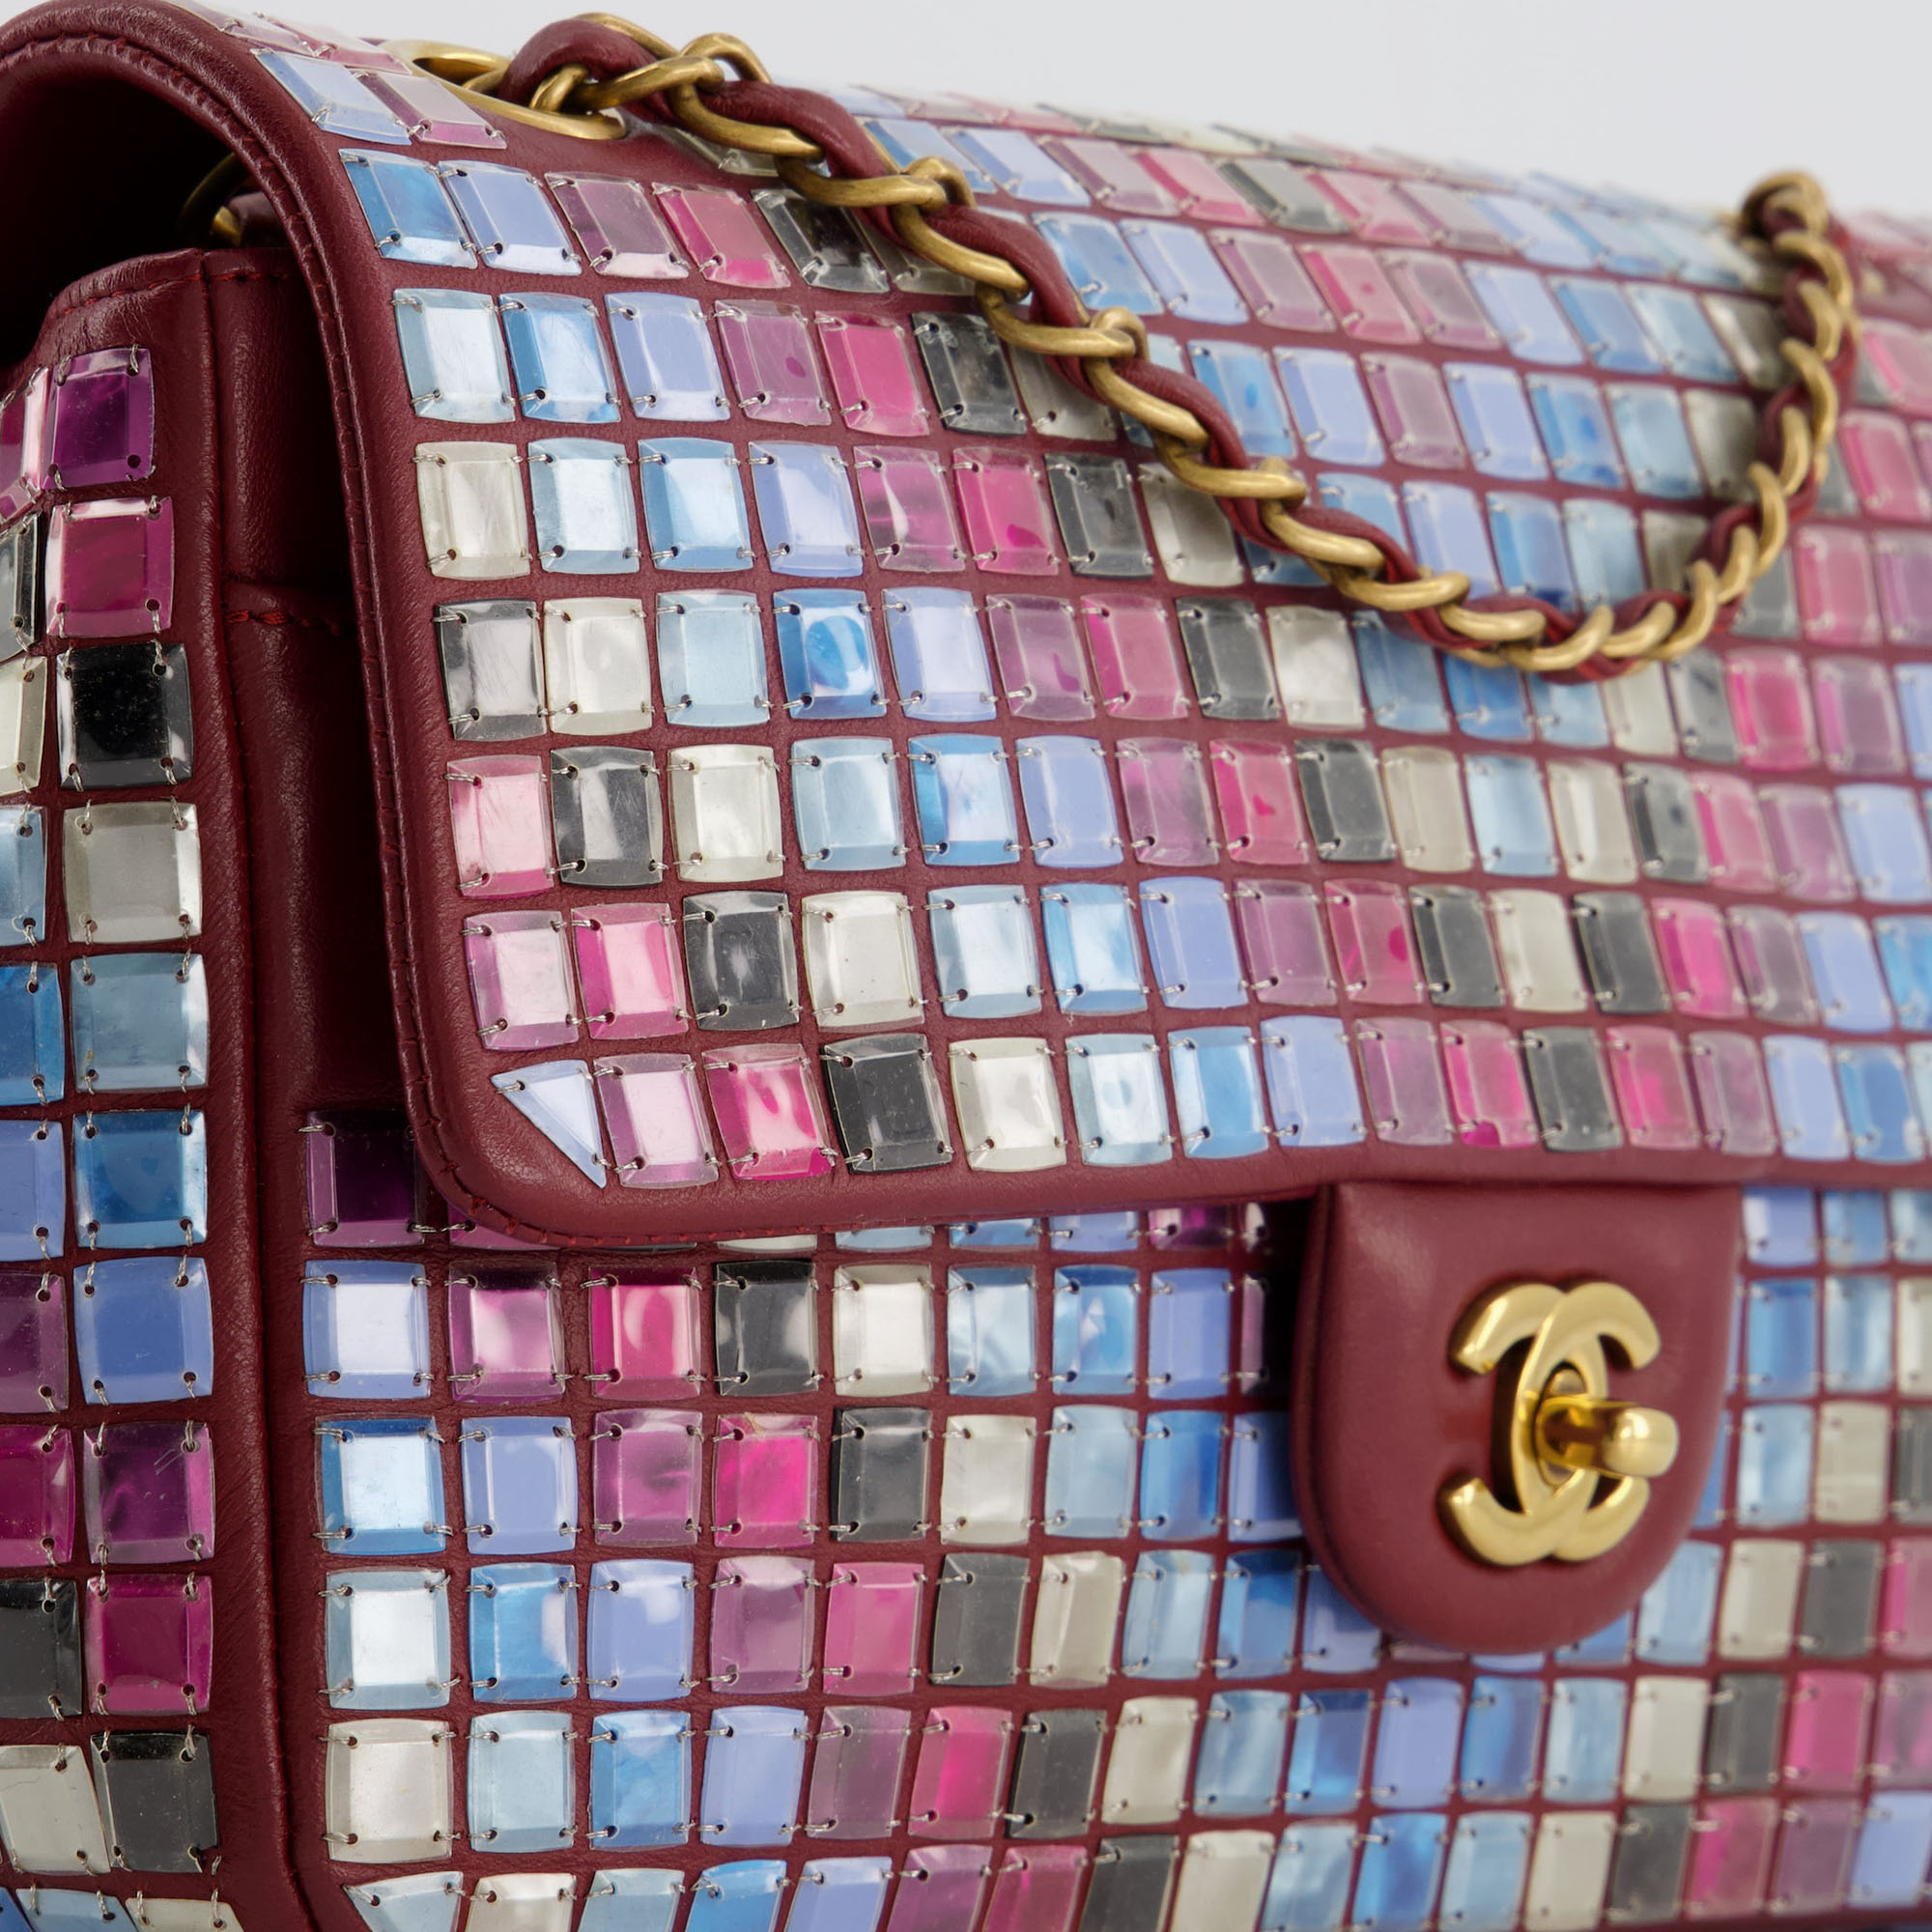 Chanel Burgundy Medium Classic Single Flap Bag Mosaic Embellished With Gold Hardware